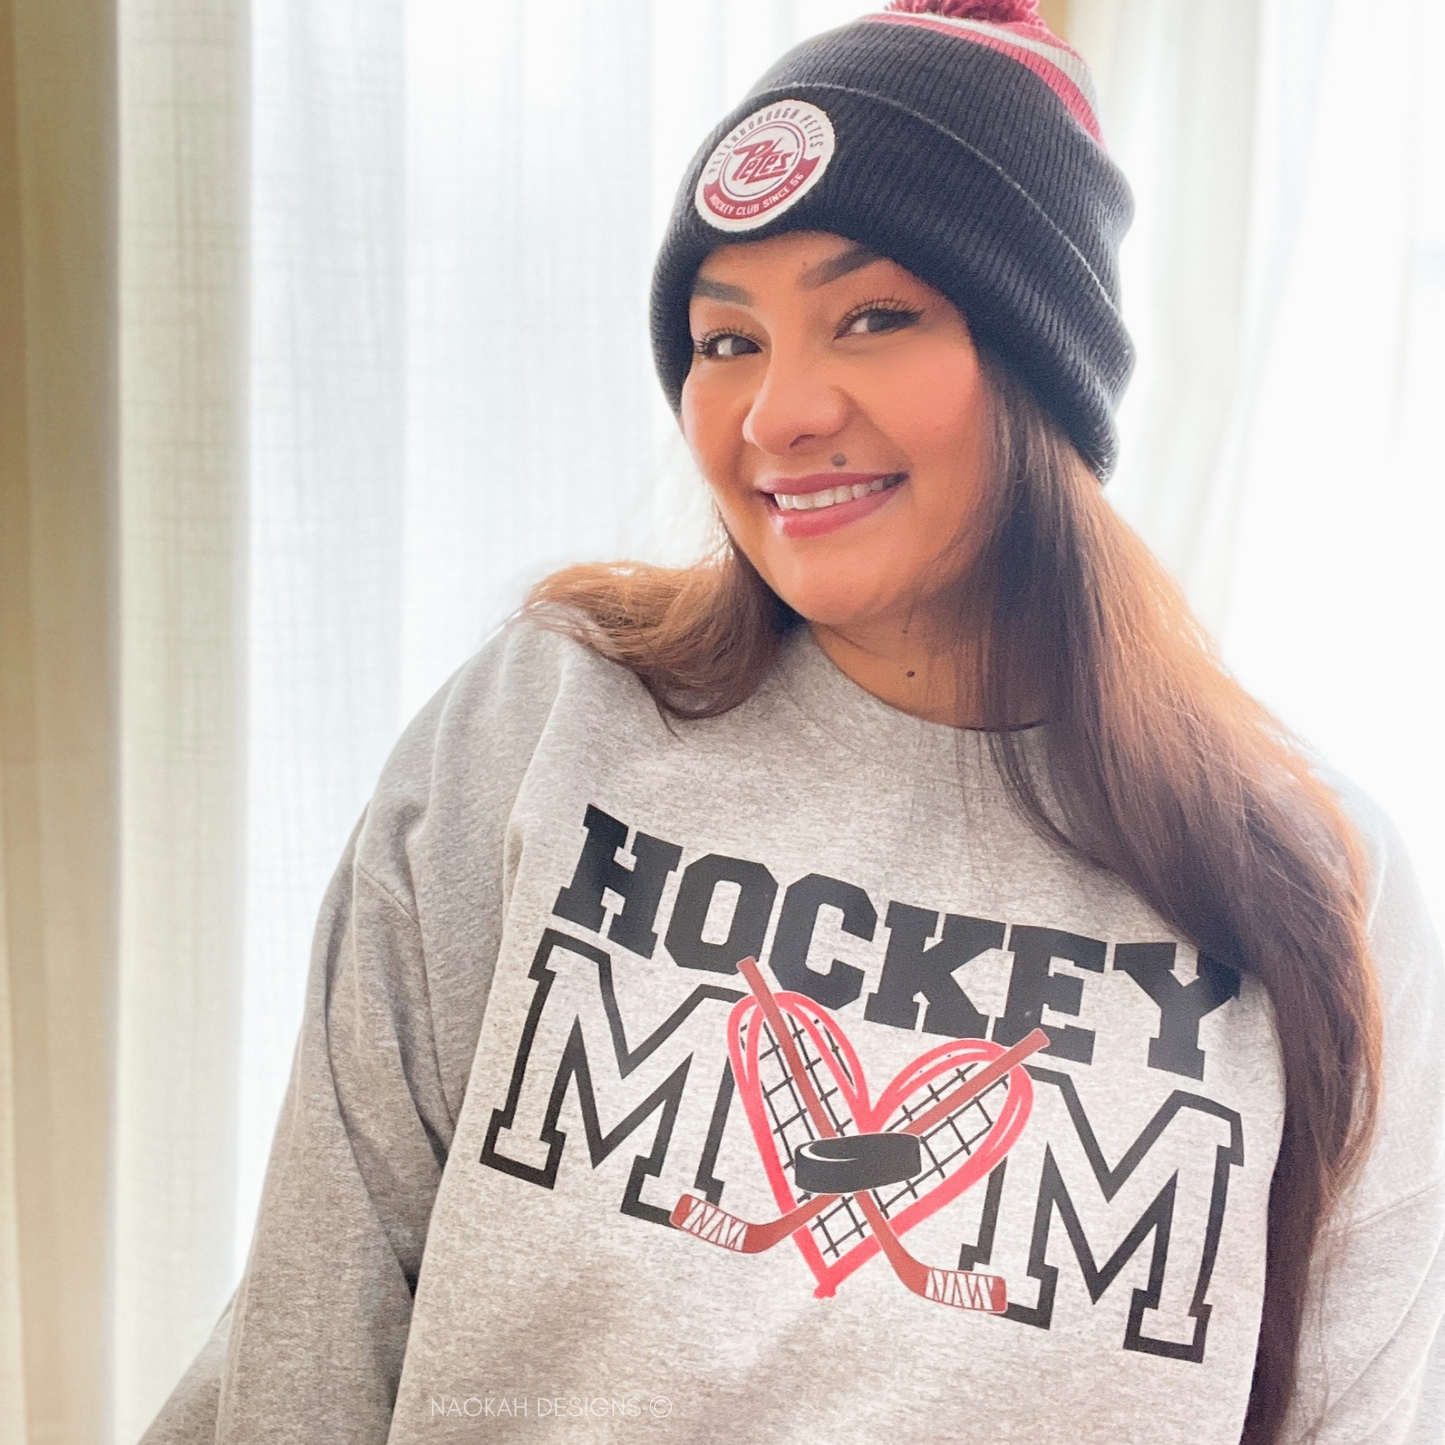 hockey mom sweater, hockey mom gift, hockey mom hat, hockey fan, hockey sweatshirt, hockey lover gift, hockey mom gift, hockey mom shirt